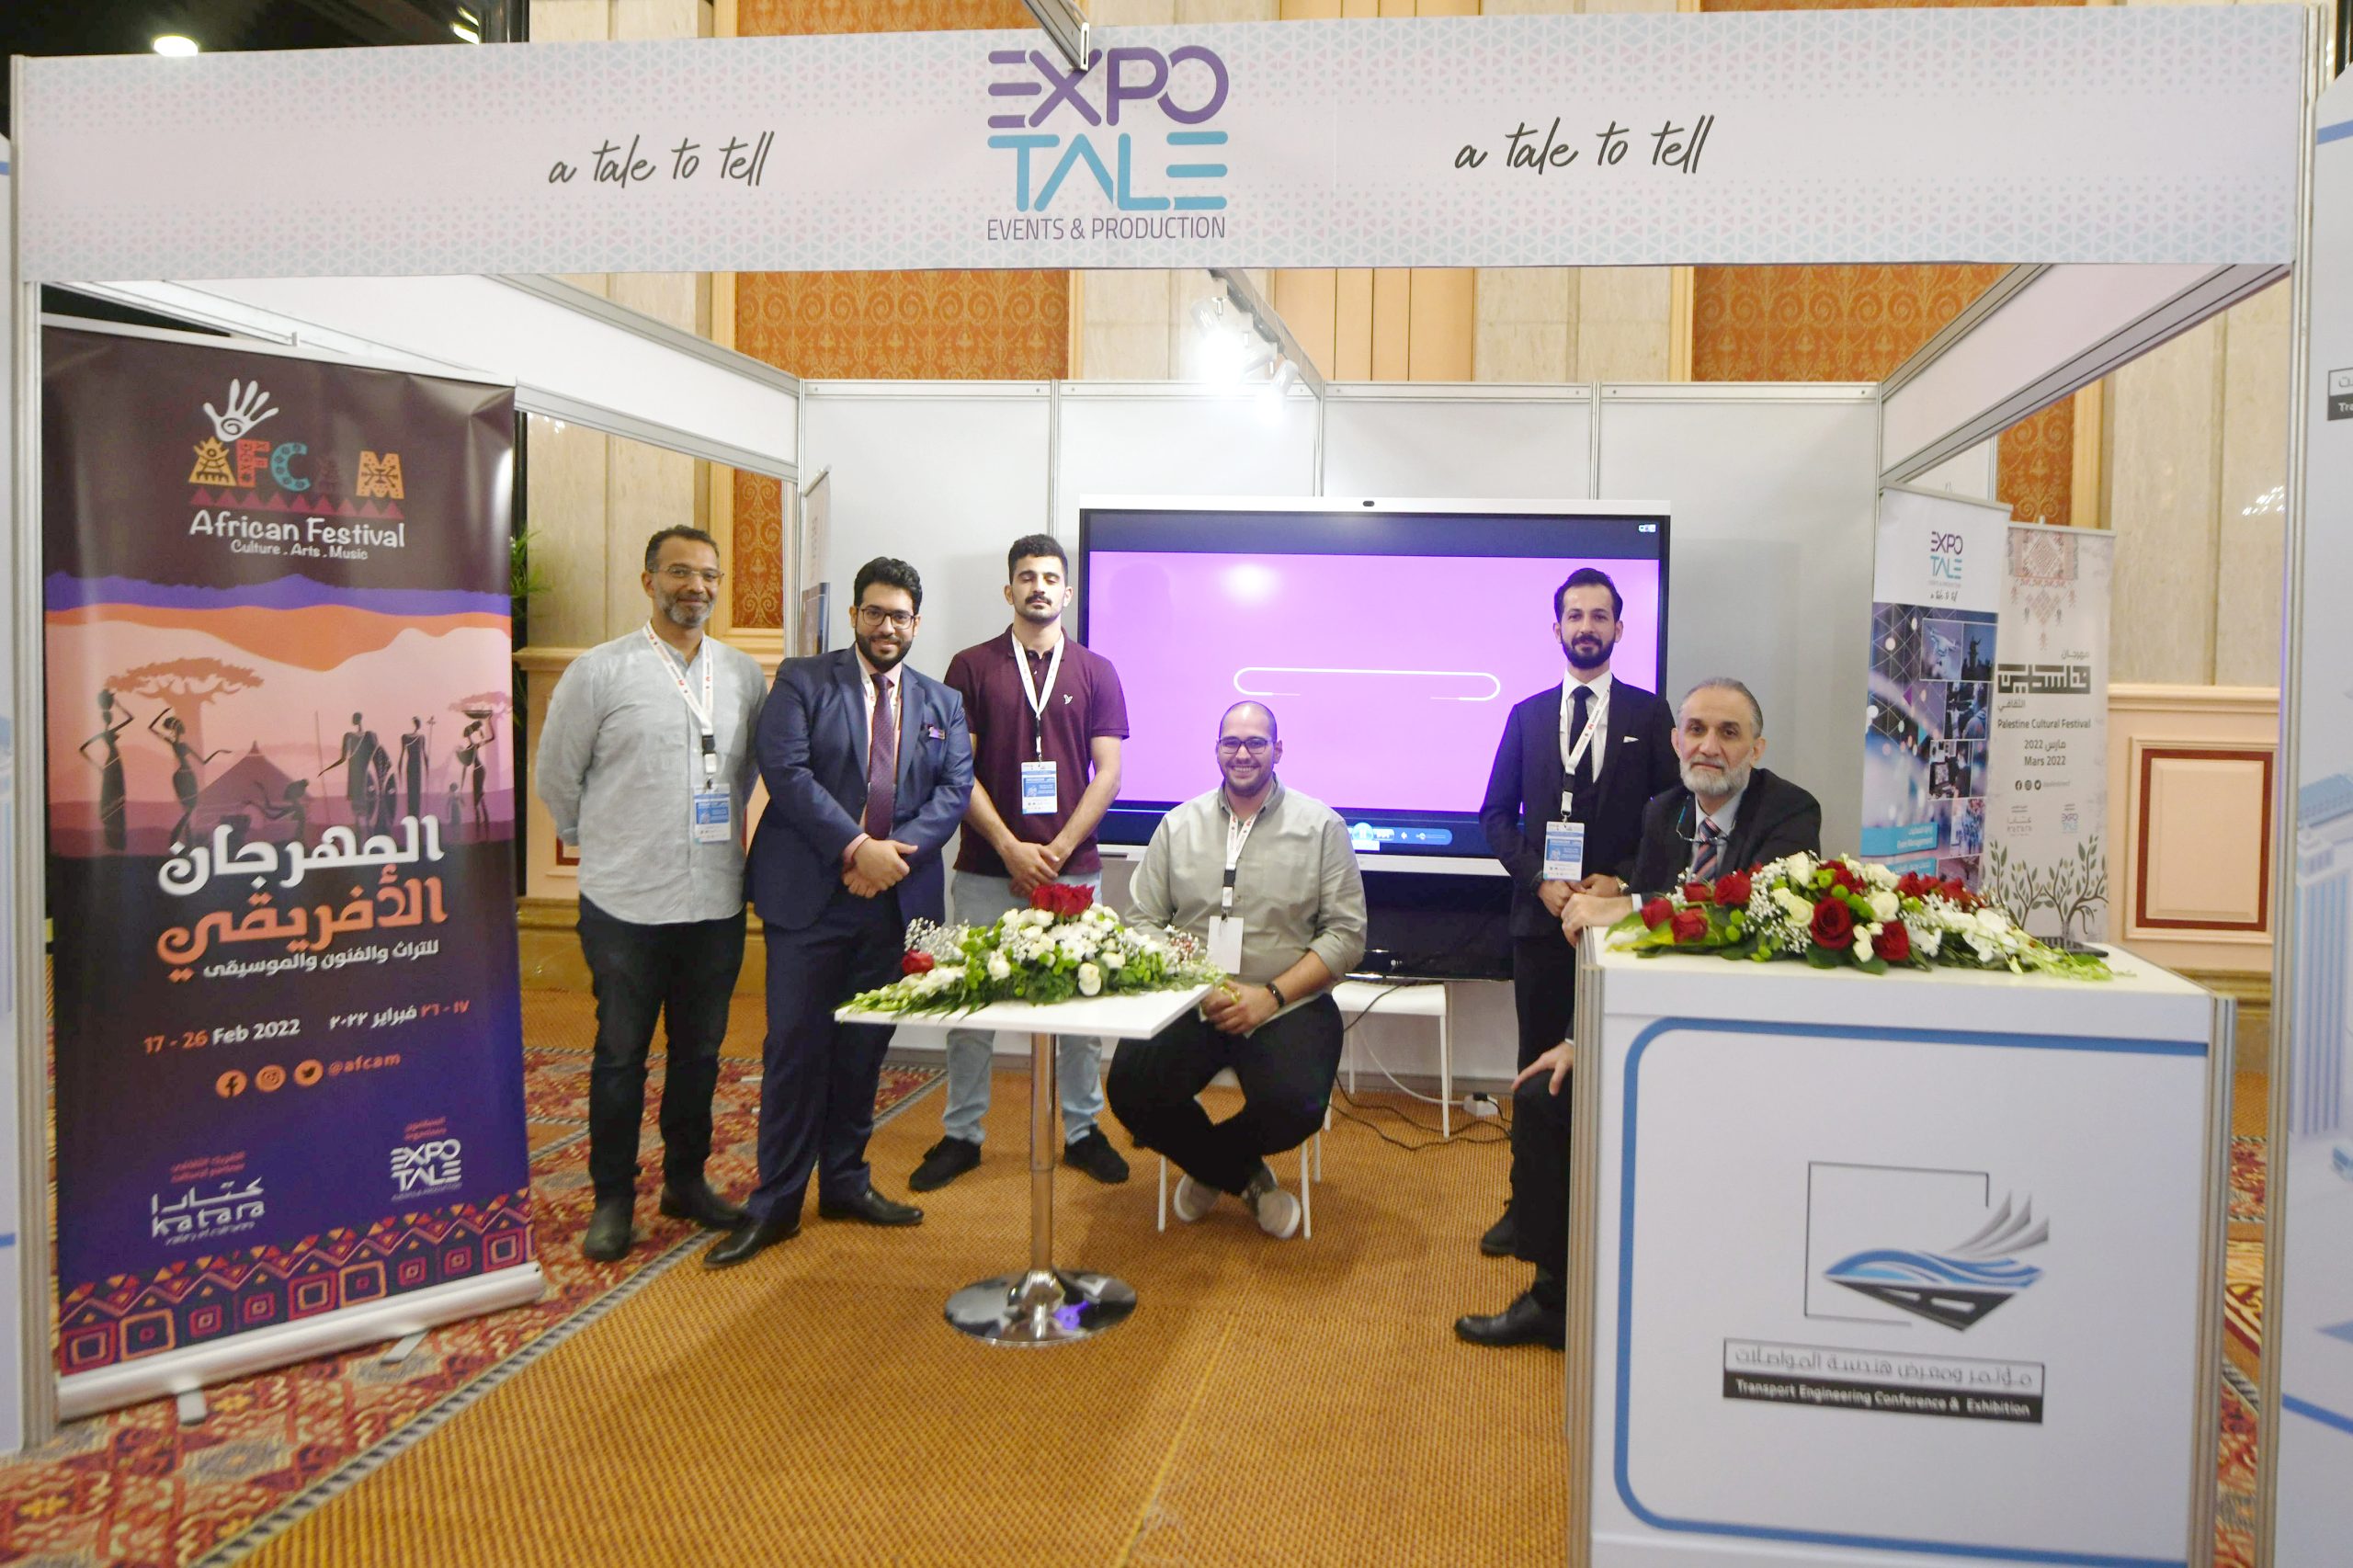 expotale-event-management-qatar-digital-rise